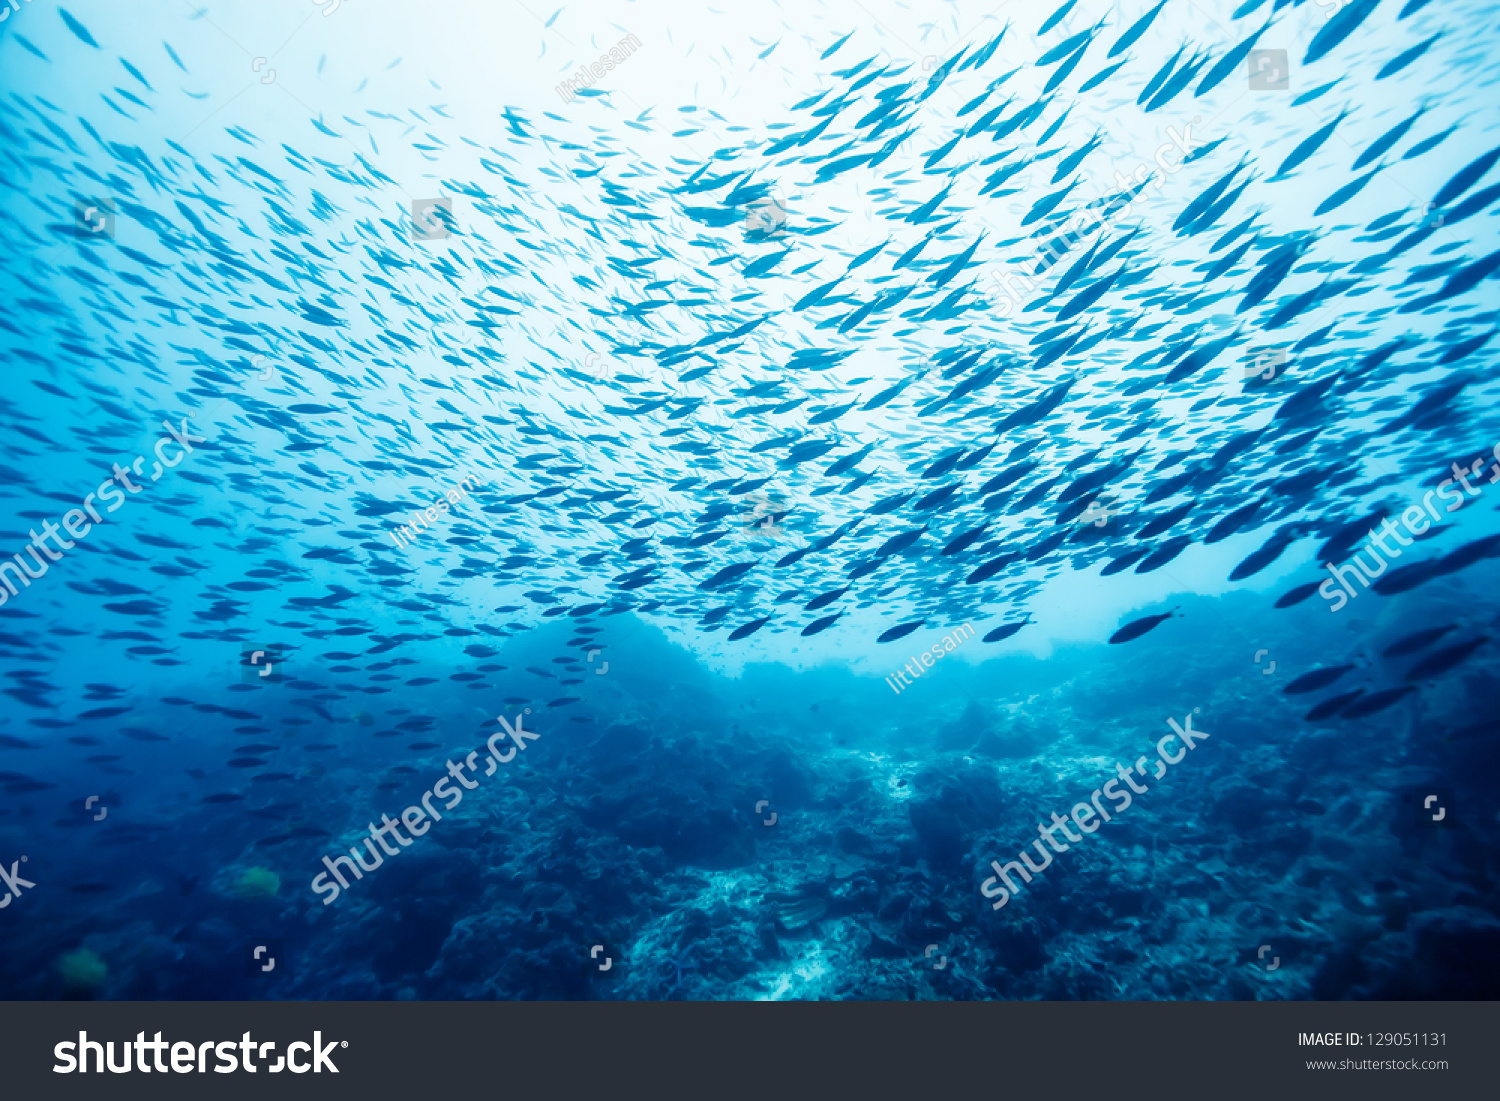 school of fish underwater #129051131